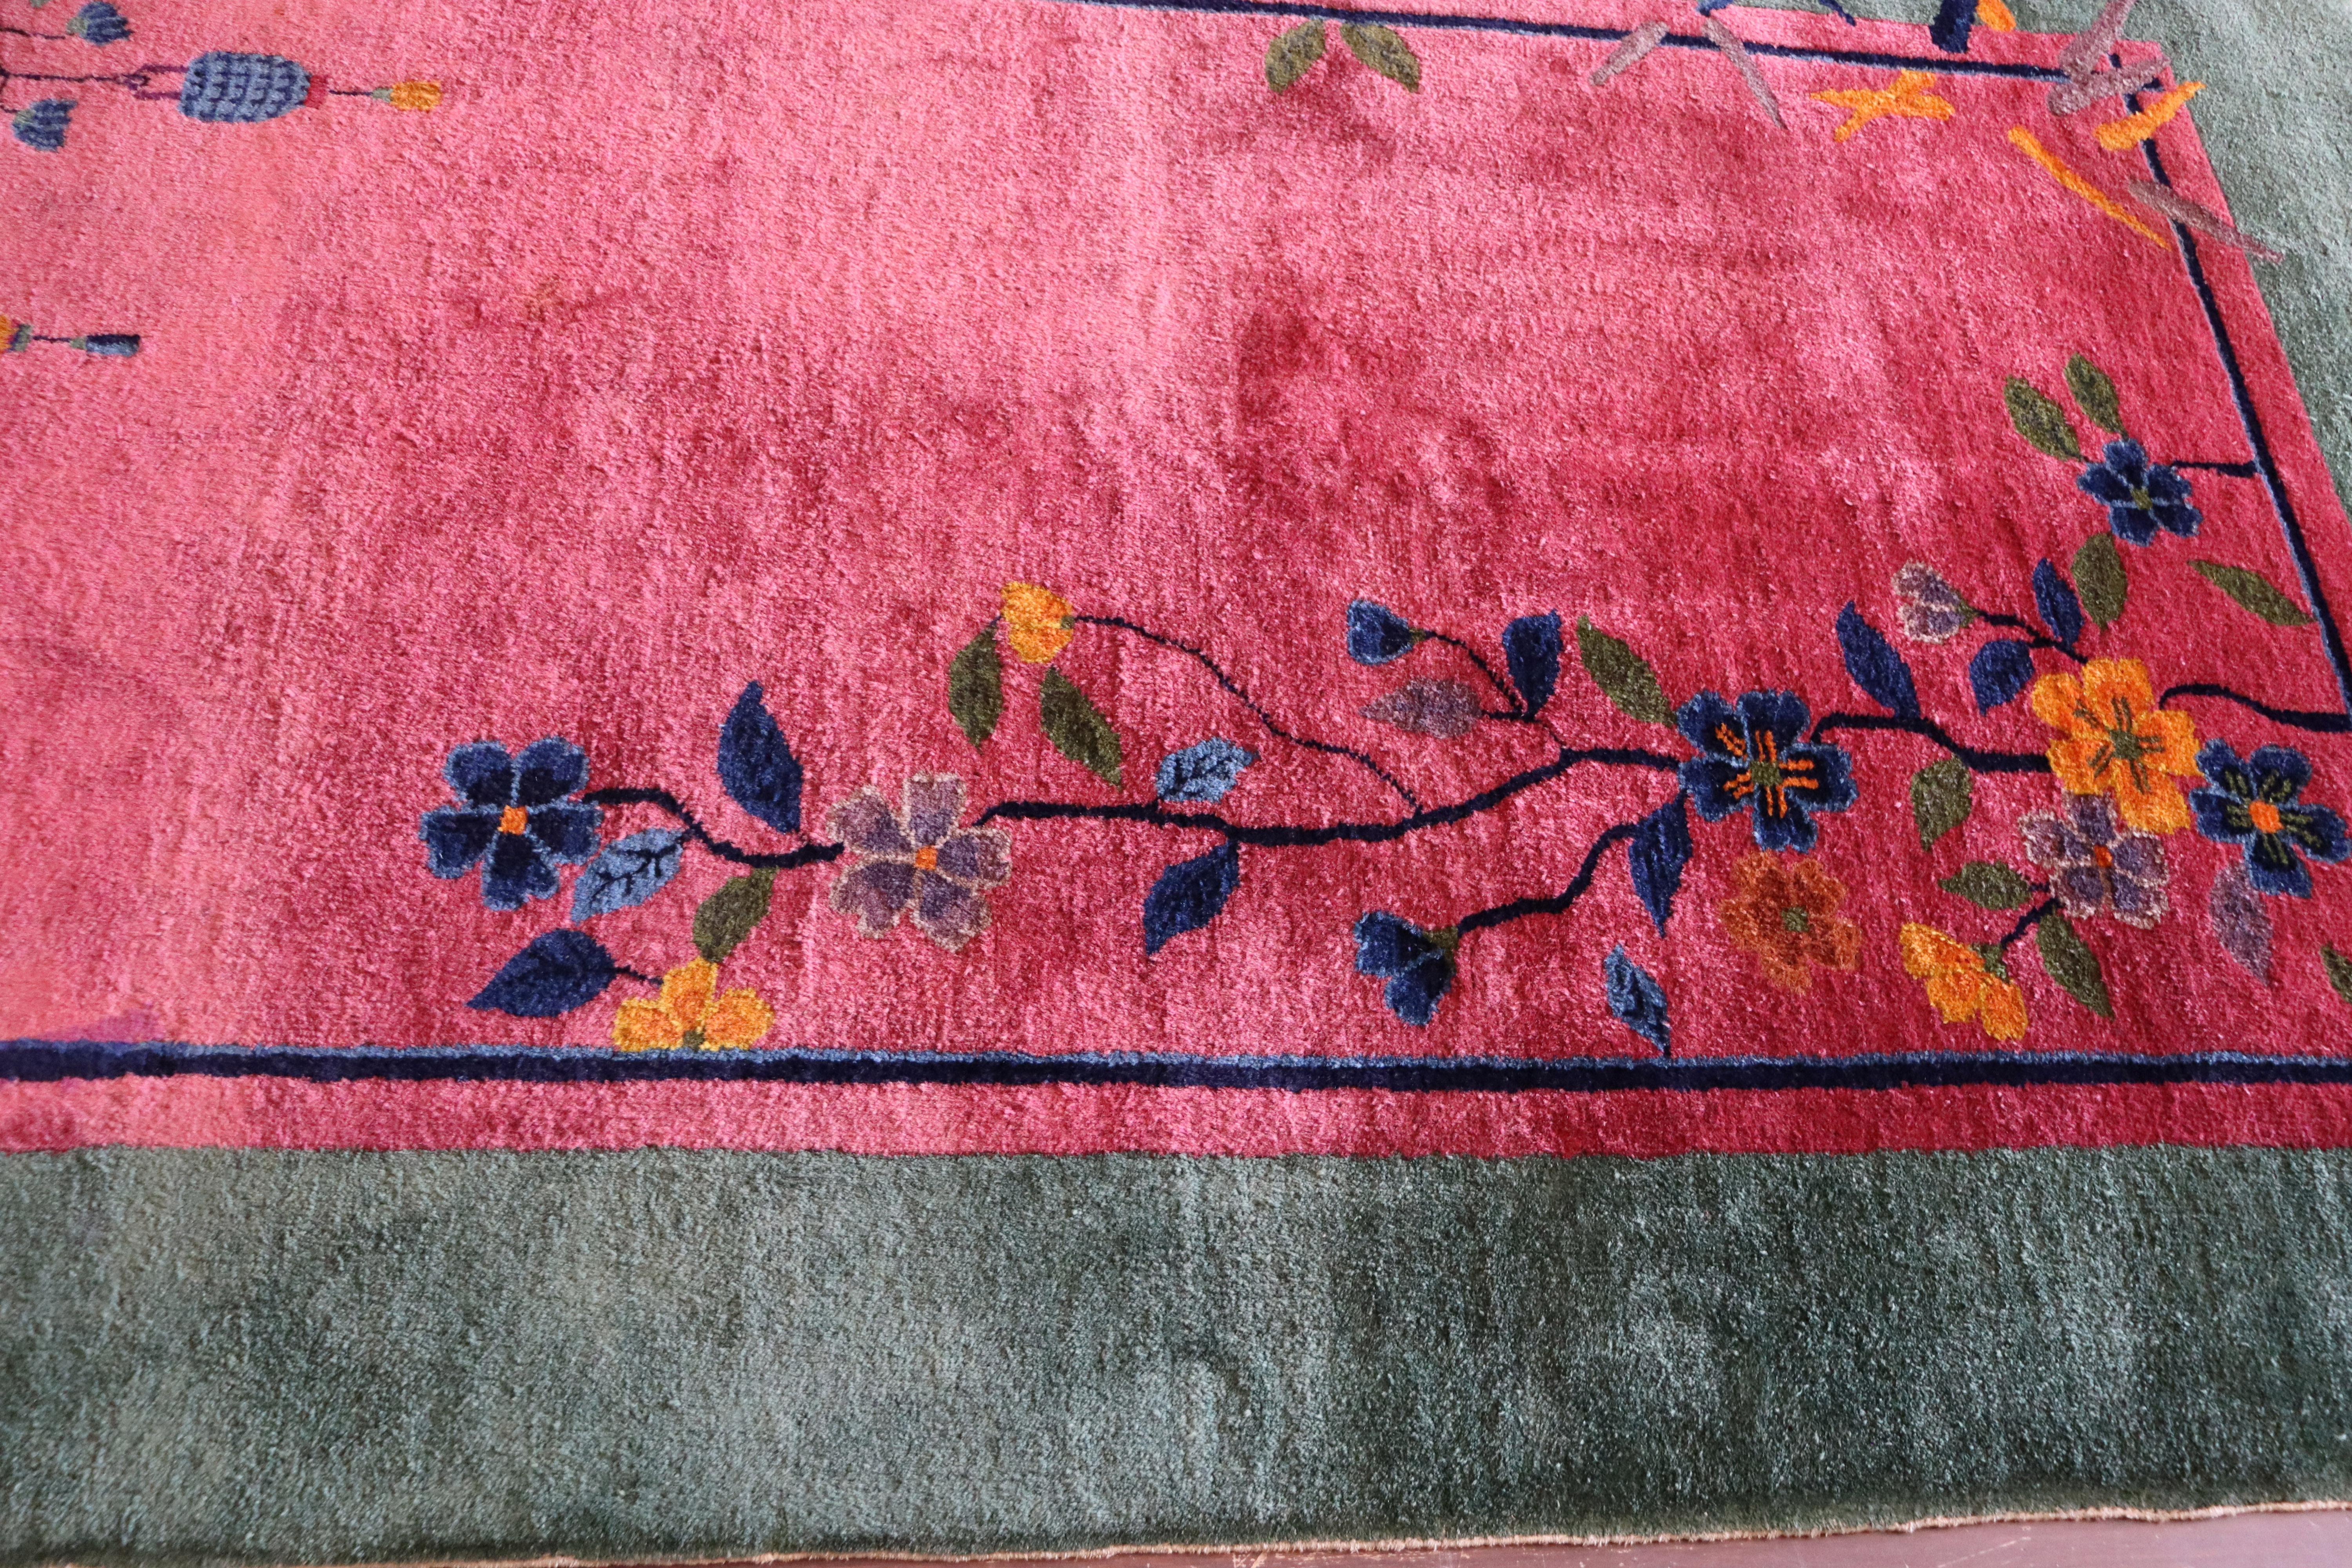 Hand-Knotted Antique Art Deco Carpet, The Best Color